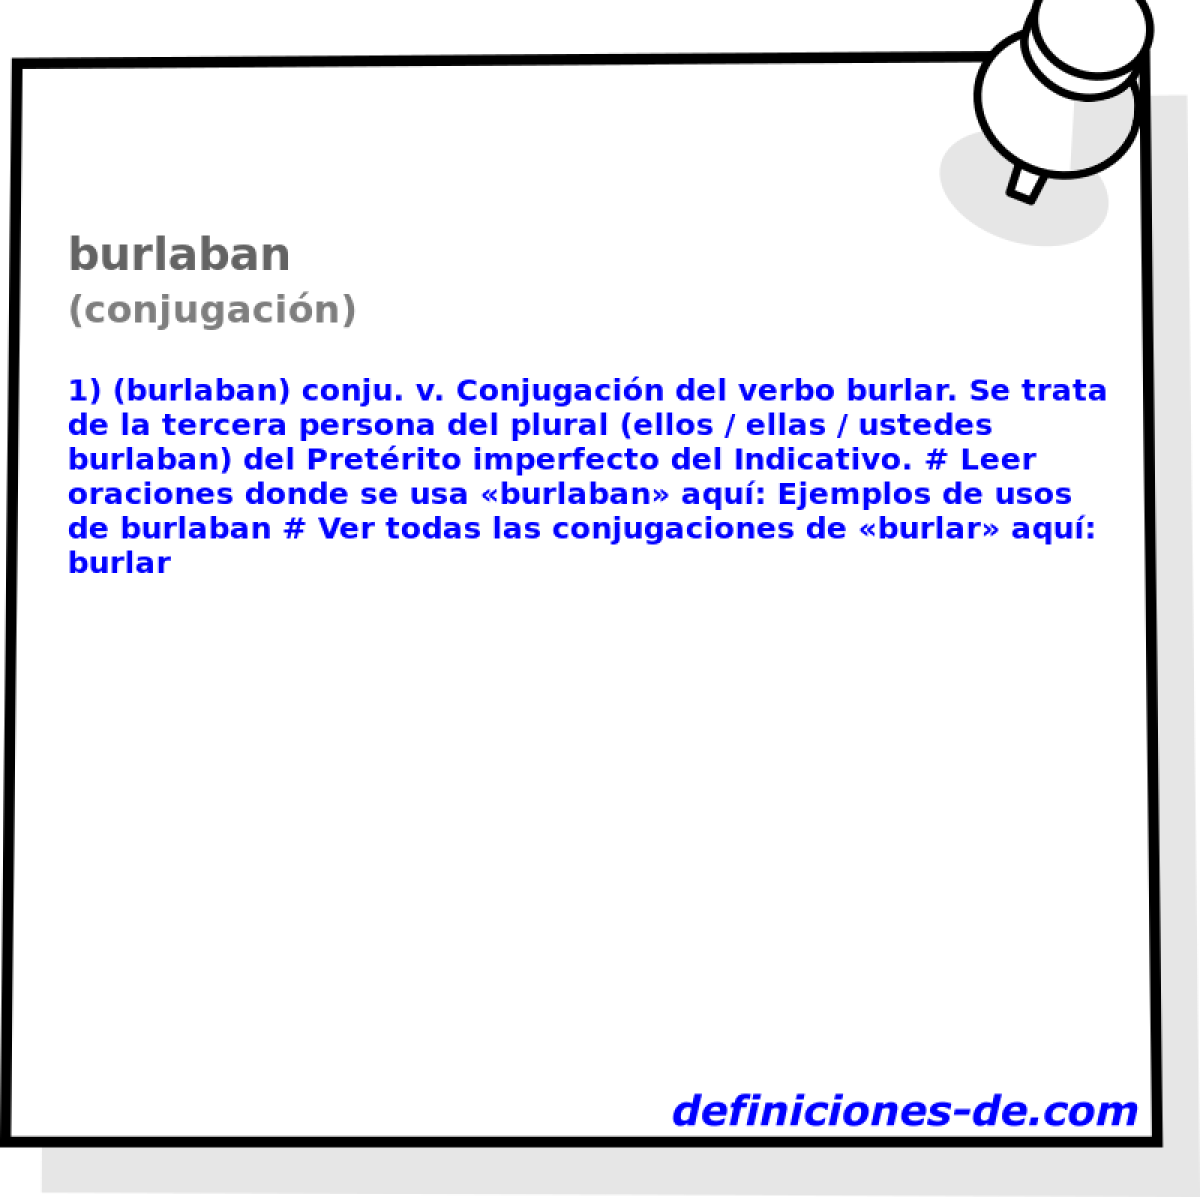 burlaban (conjugacin)